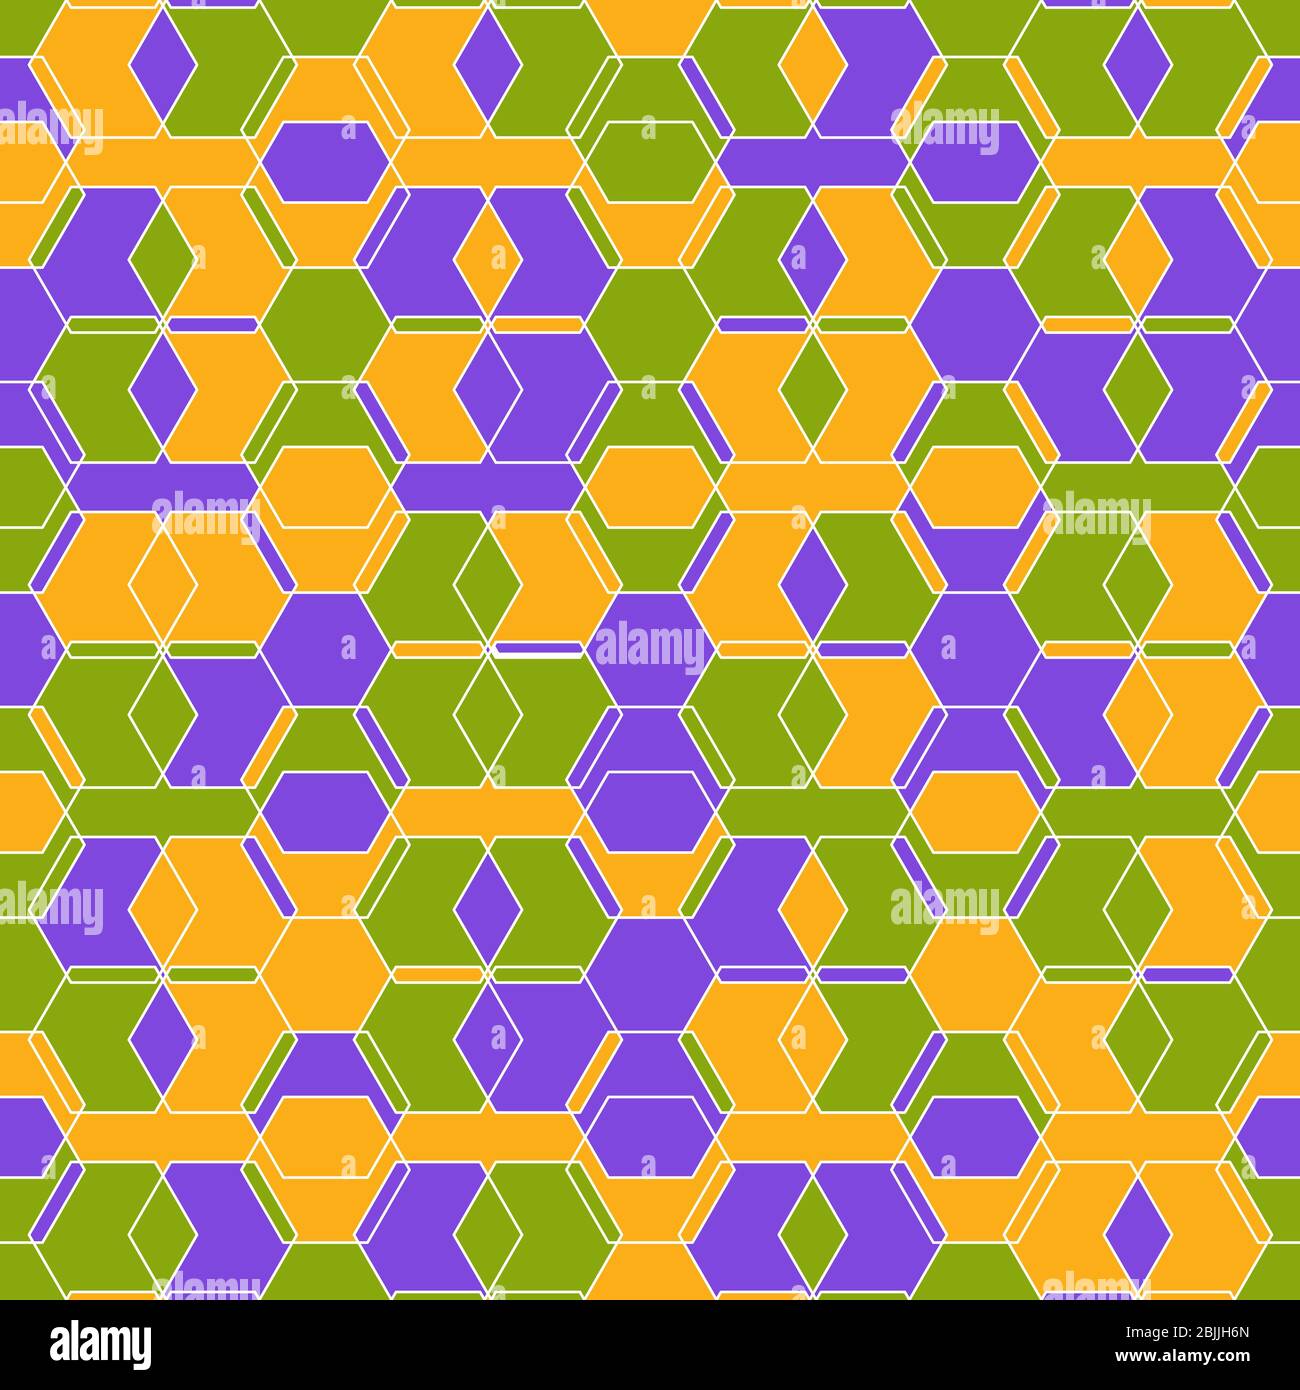 Vektorfarbe nahtloses Muster von zufälligen Hexagon-Linien. Stock Illustration für Hintergründe, Textilien und Verpackungen. Stock Vektor